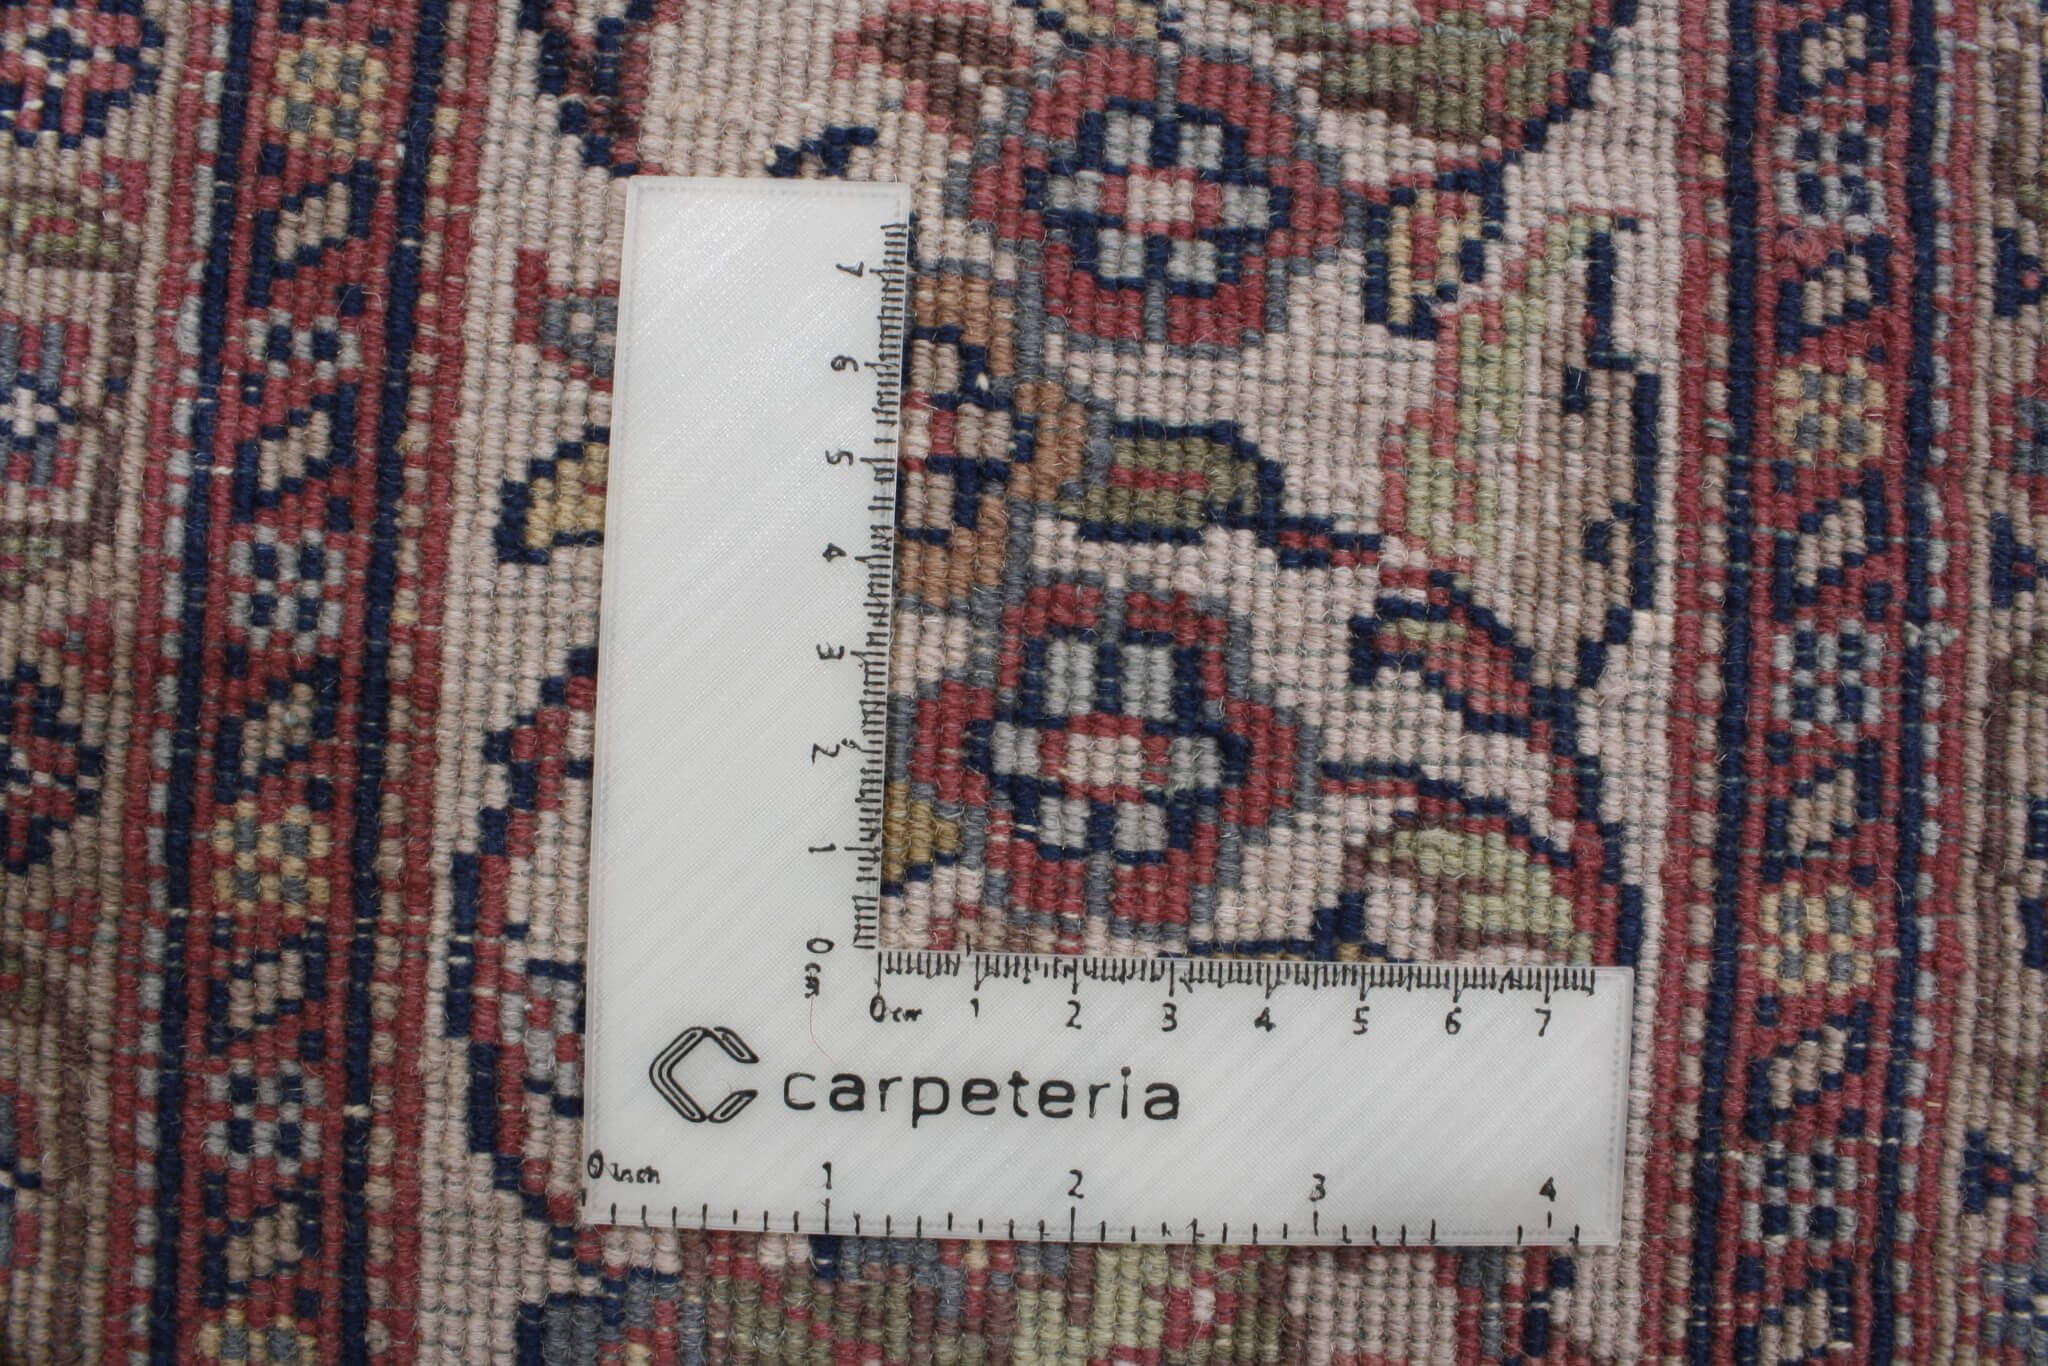 Orientální koberec Džajpur Premium